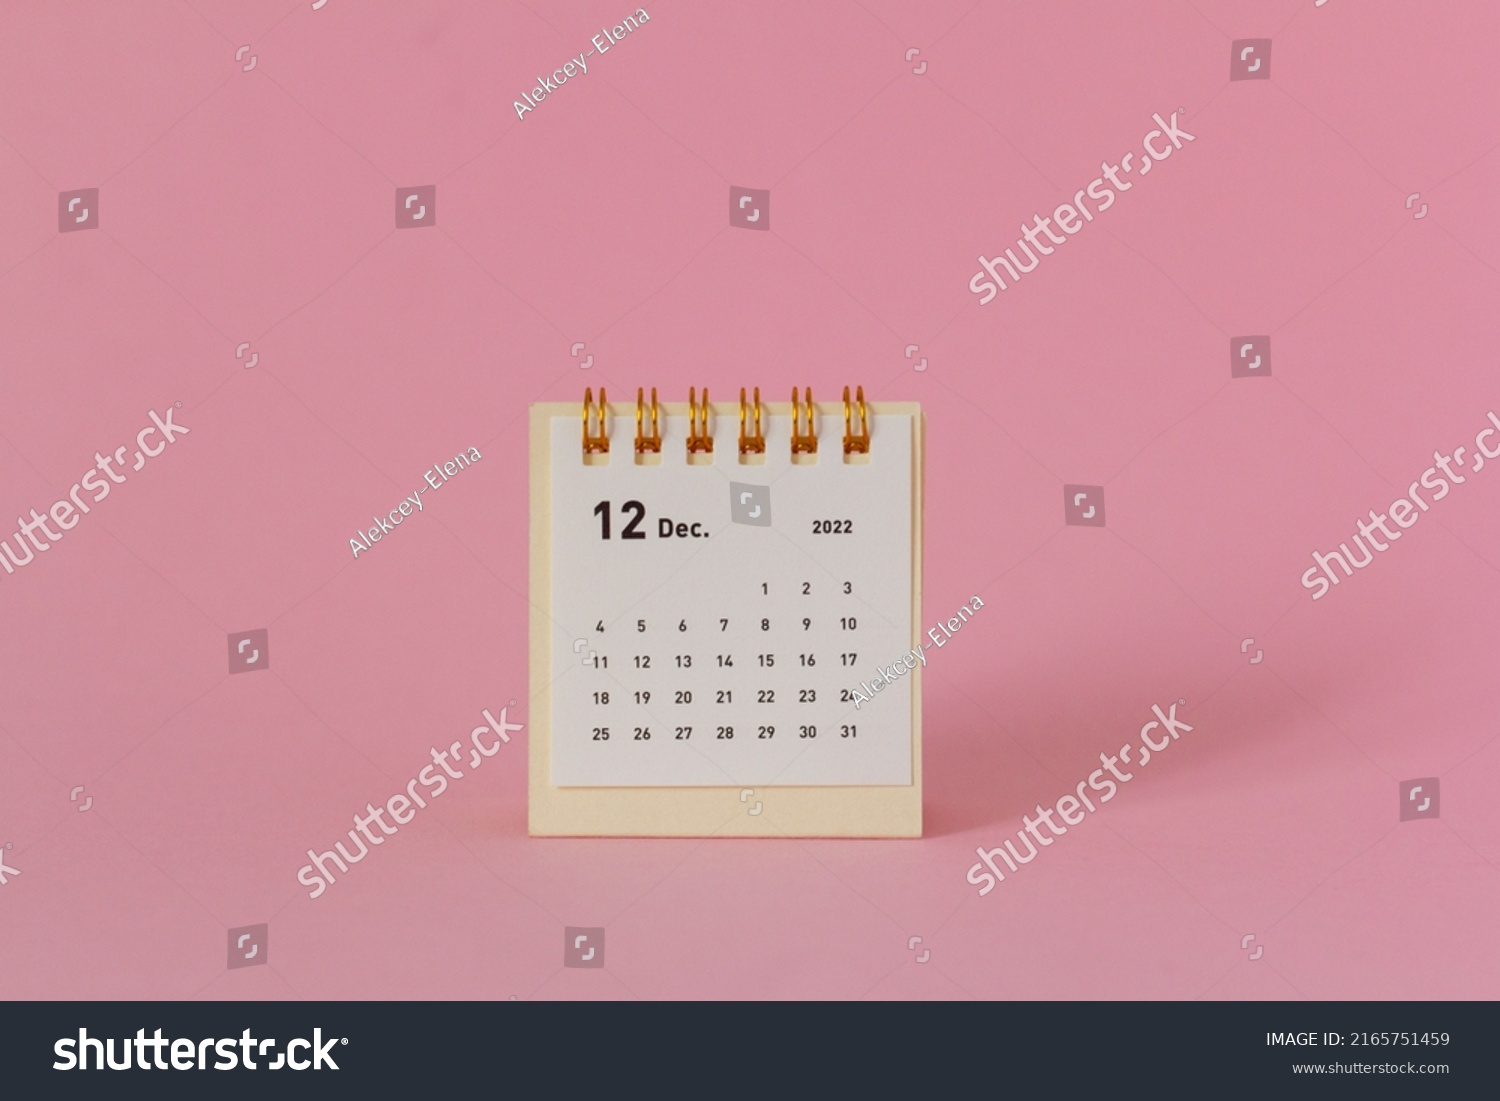 Desktop calendar for December 2022 on a pink background. #2165751459